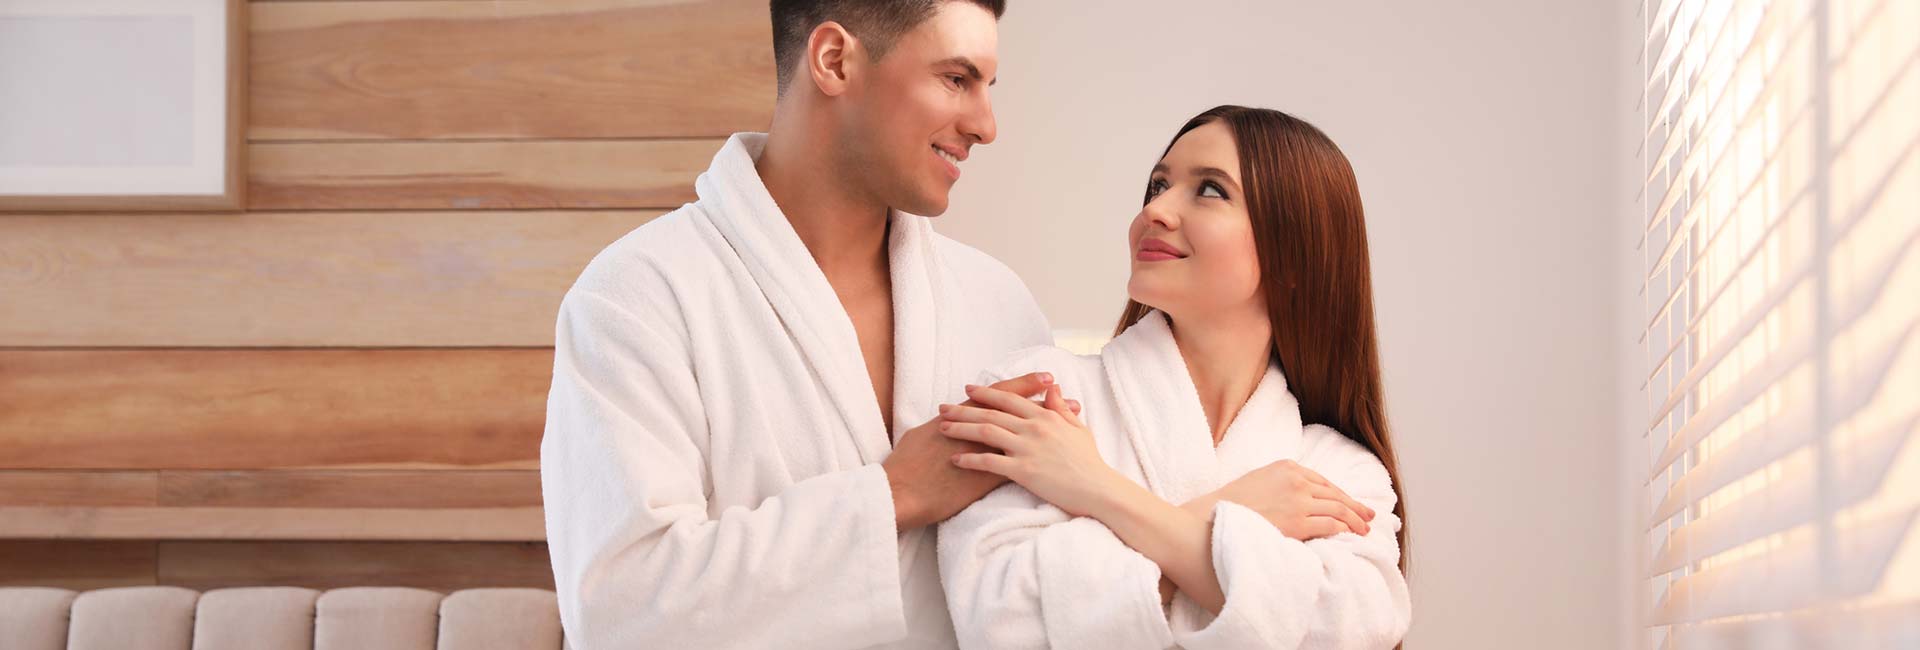 Happy couple wearing bathrobes near window in bedroom